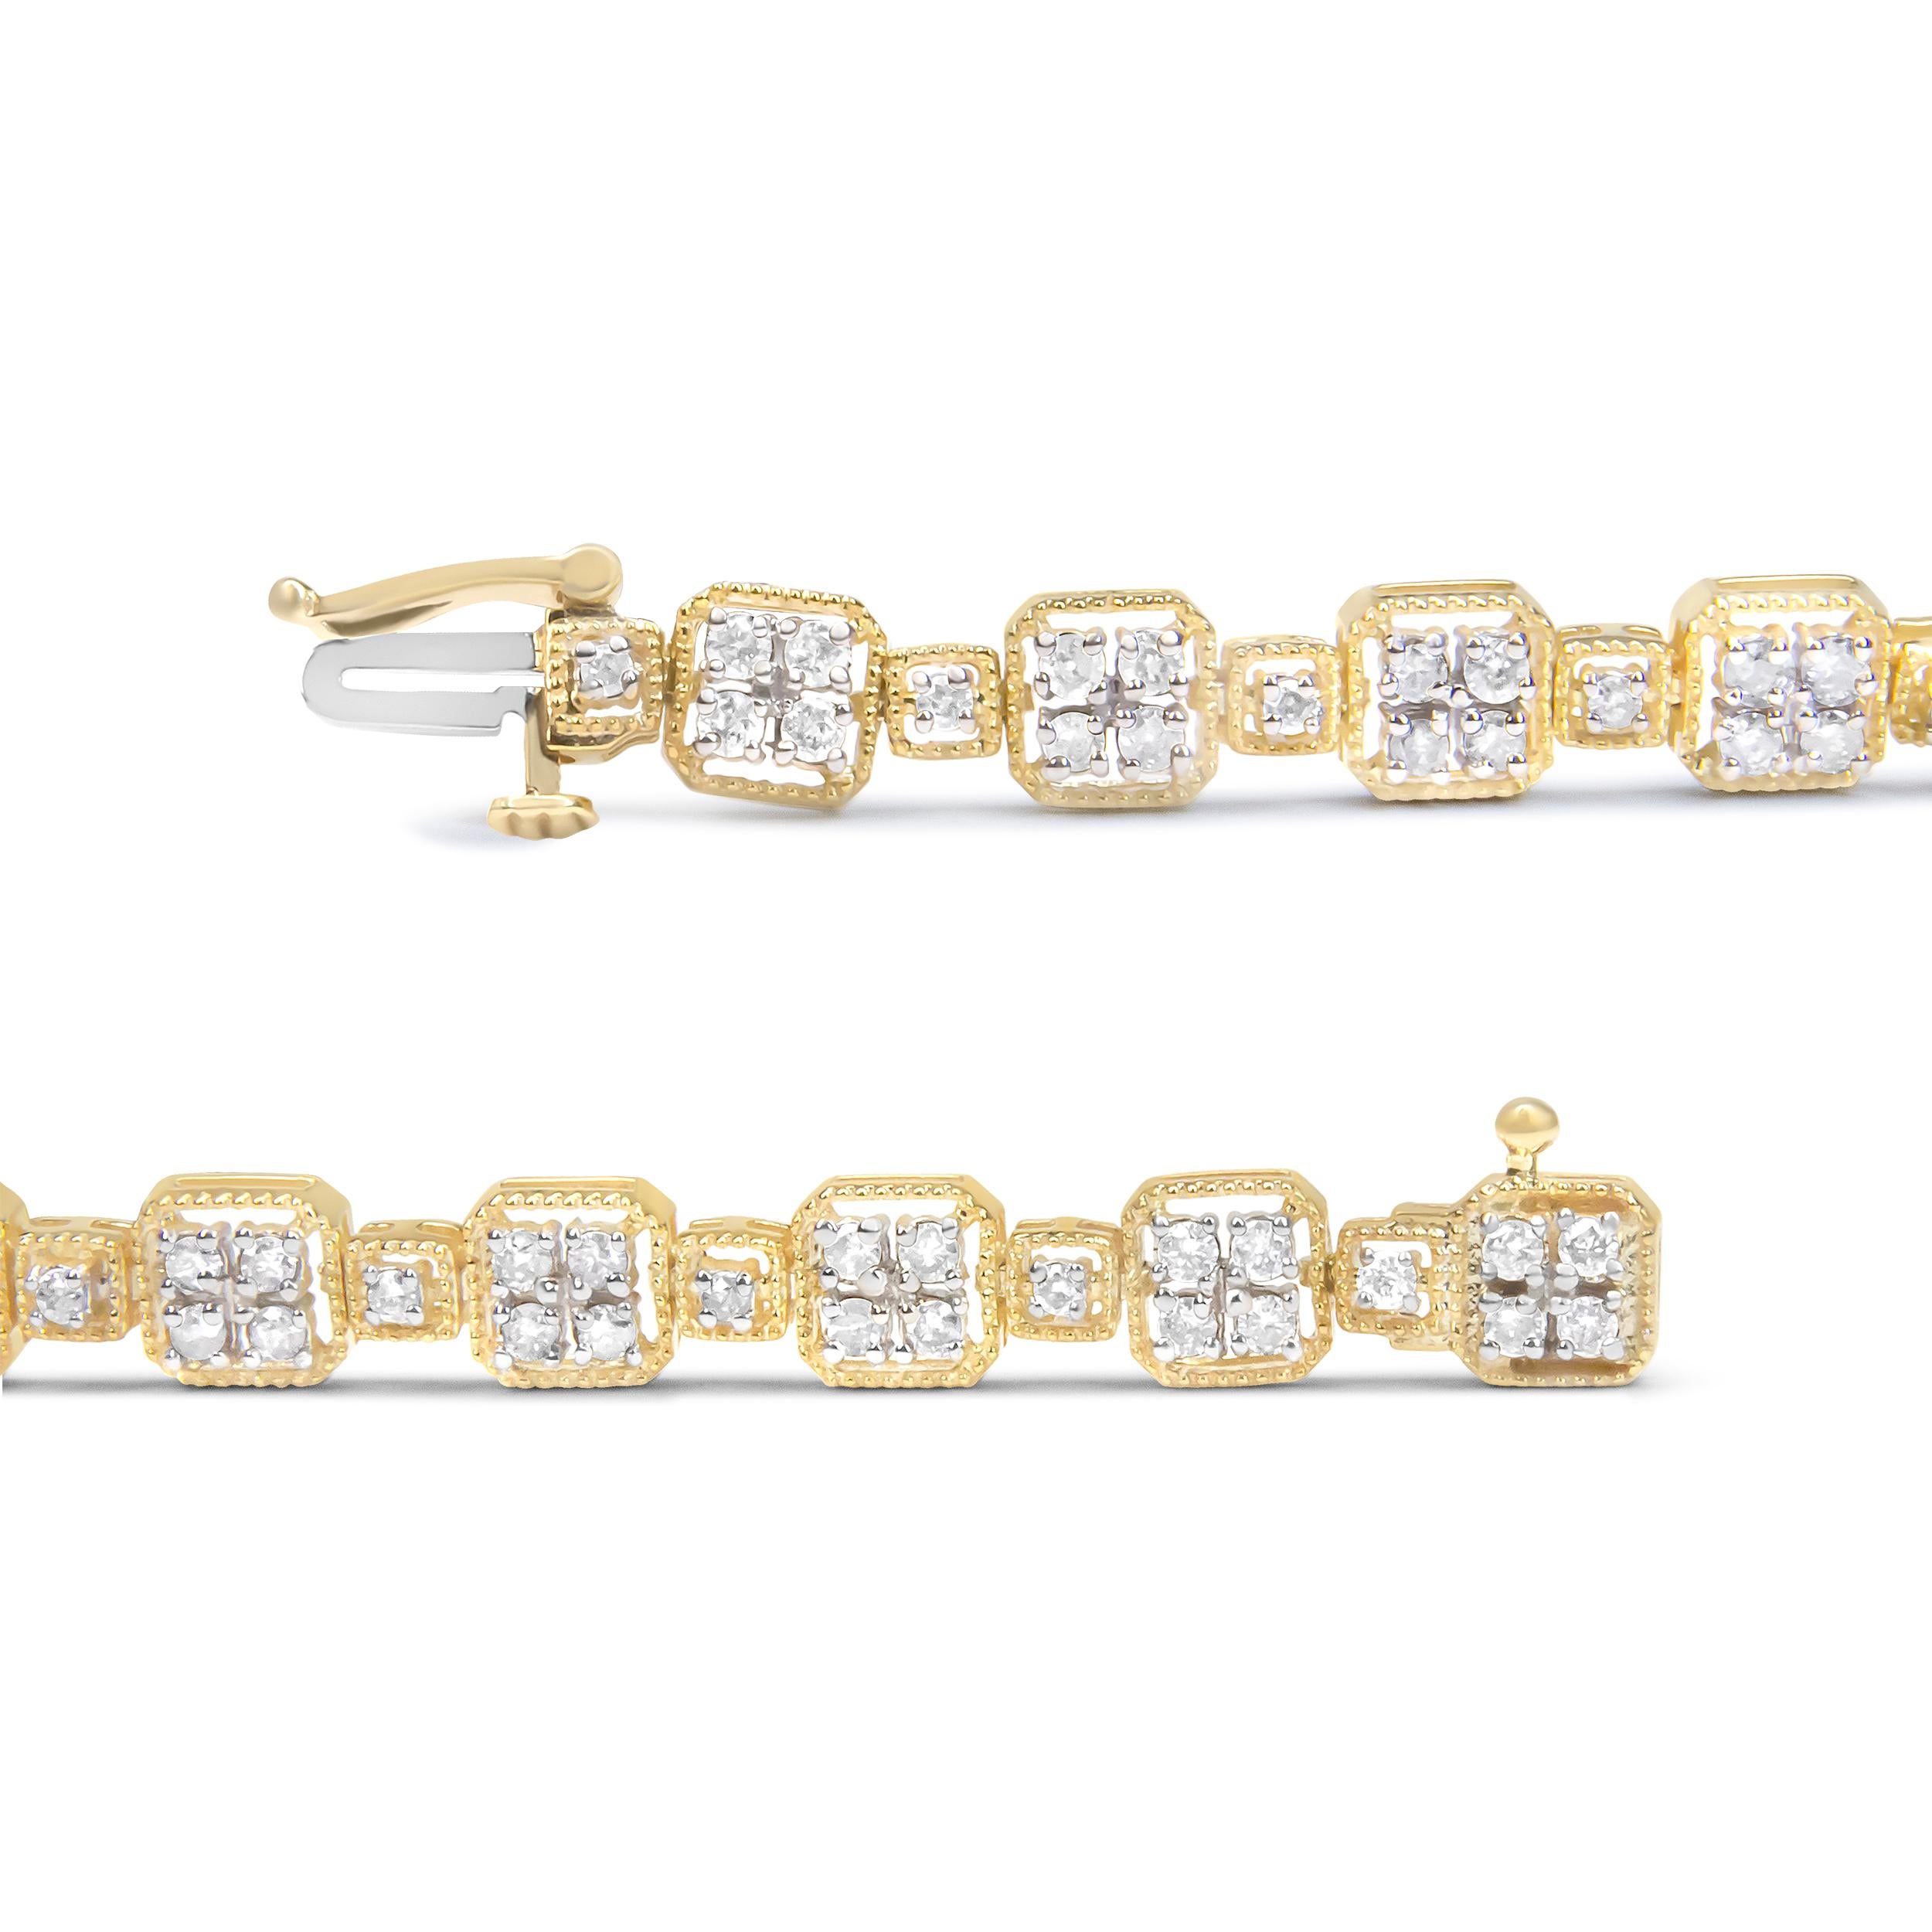 Avec son look glamour qui illuminera tous vos choix stylistiques, ce bracelet à maillons stylisés présente un ensemble de diamants étincelants dans une silhouette carrée pour une touche de modernité. Ce design sophistiqué présente des maillons de